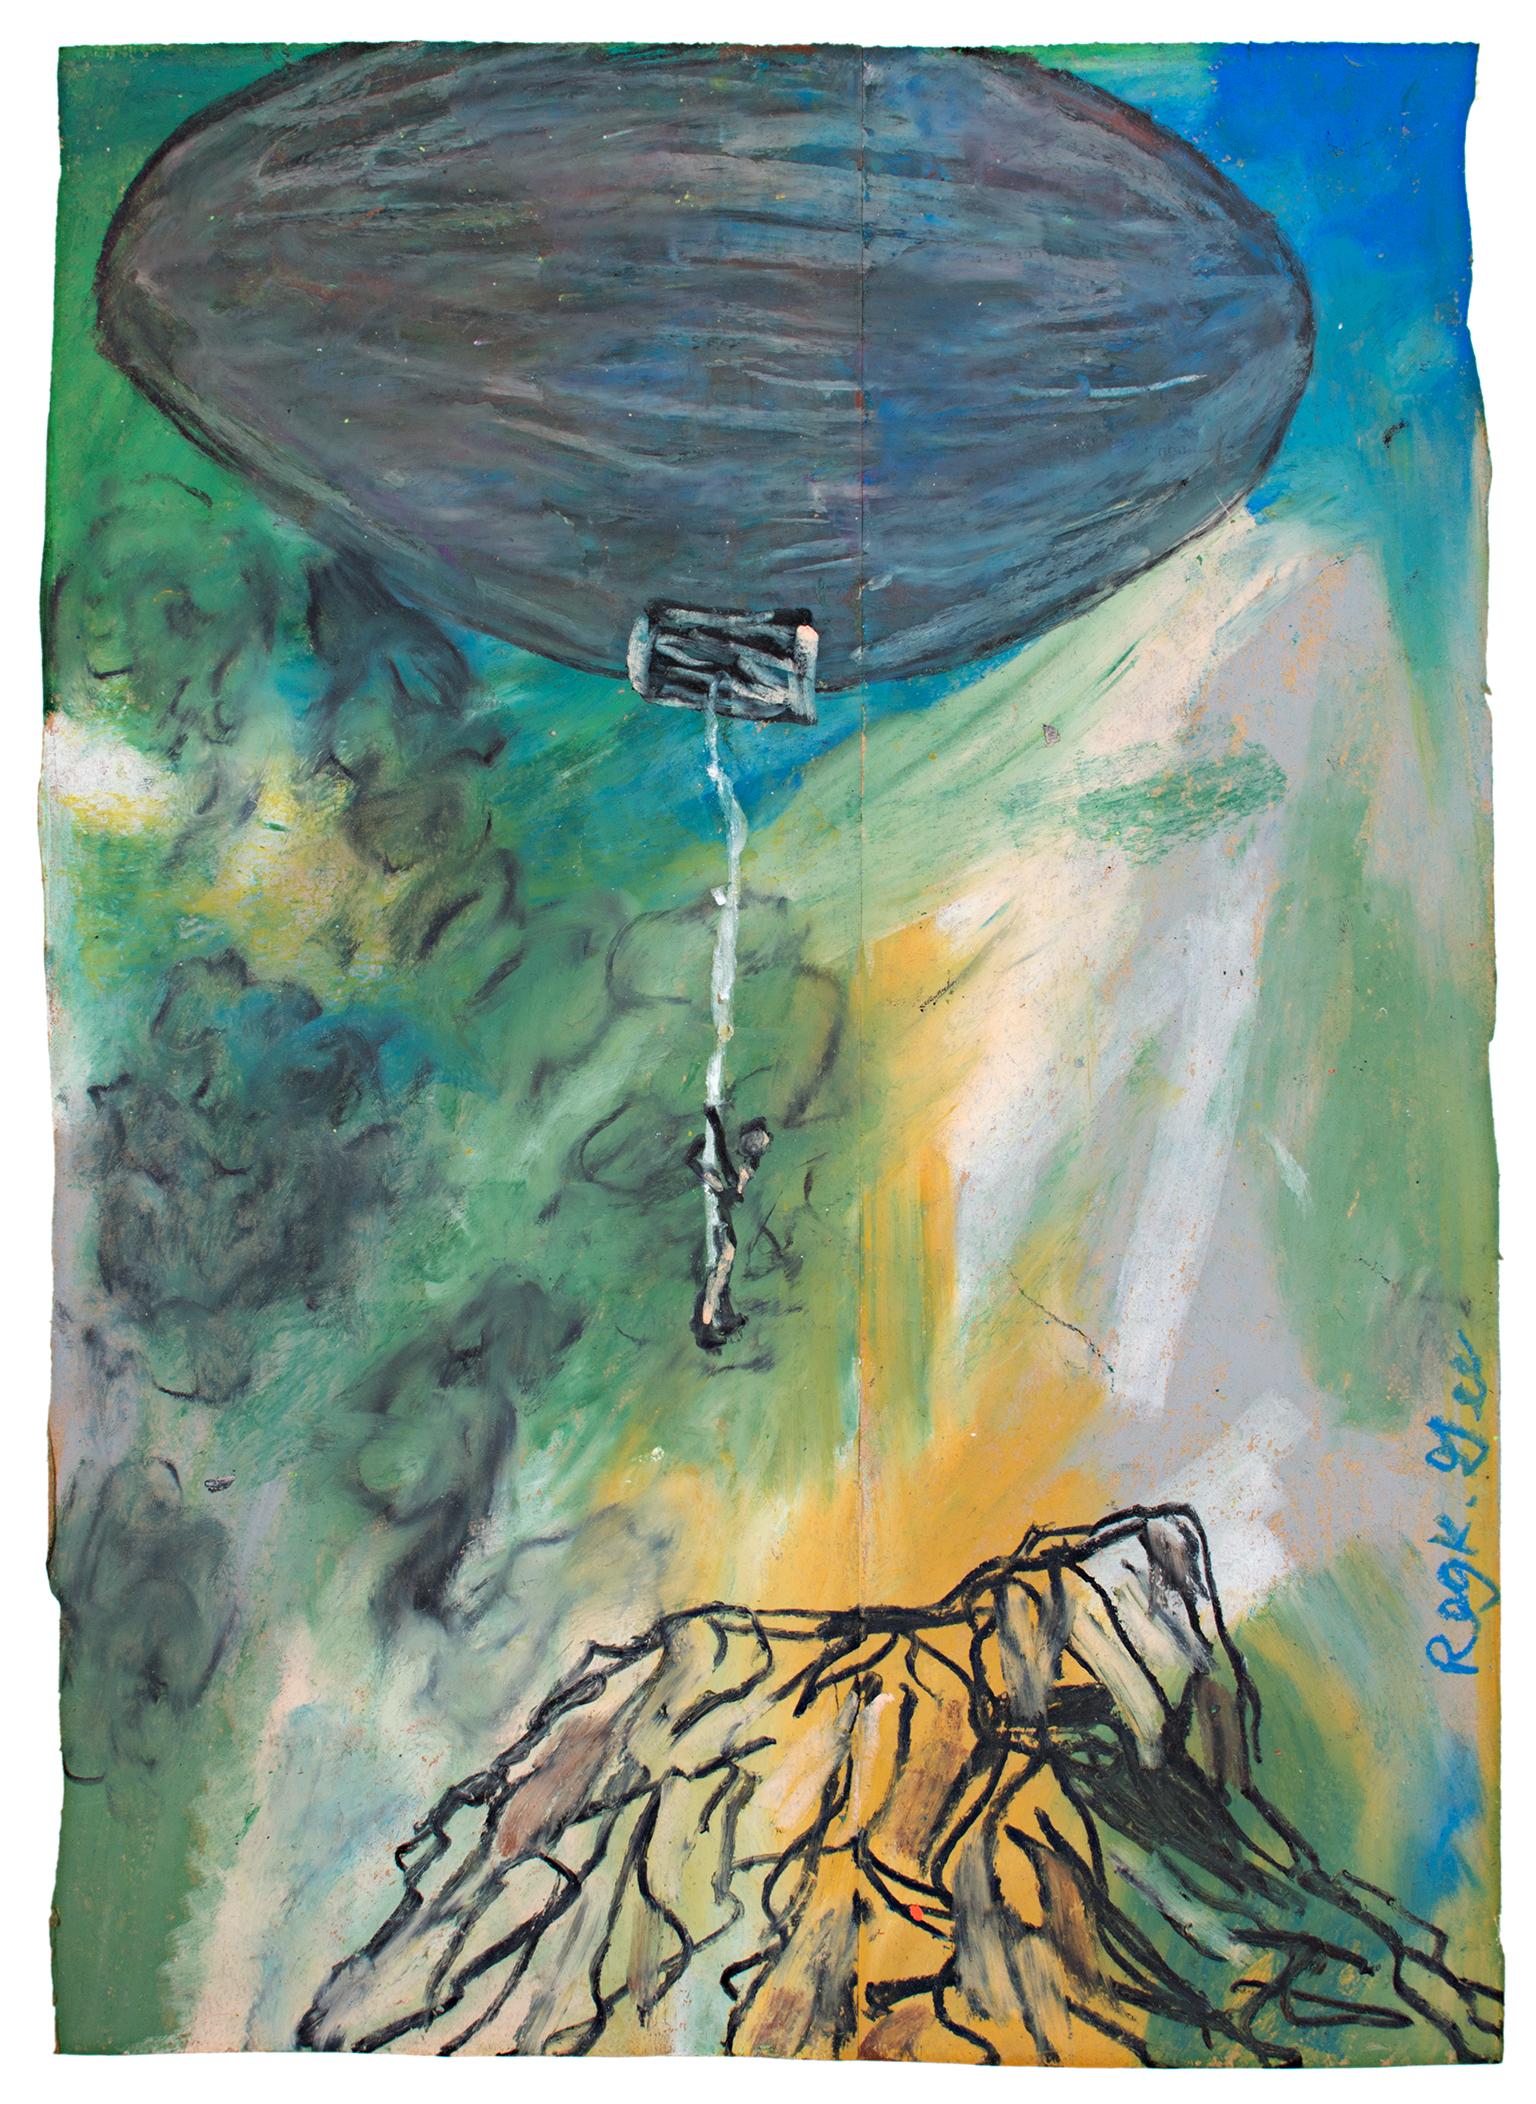 "The Key Figure at Cold Moment" ist ein Original-Ölpastell auf einer Papiertüte von Reginald K. Gee. Der Künstler hat das Werk am unteren rechten Rand signiert. Diese Arbeit zeigt eine Figur, die von einem Luftschiff auf einen Berg herabgelassen